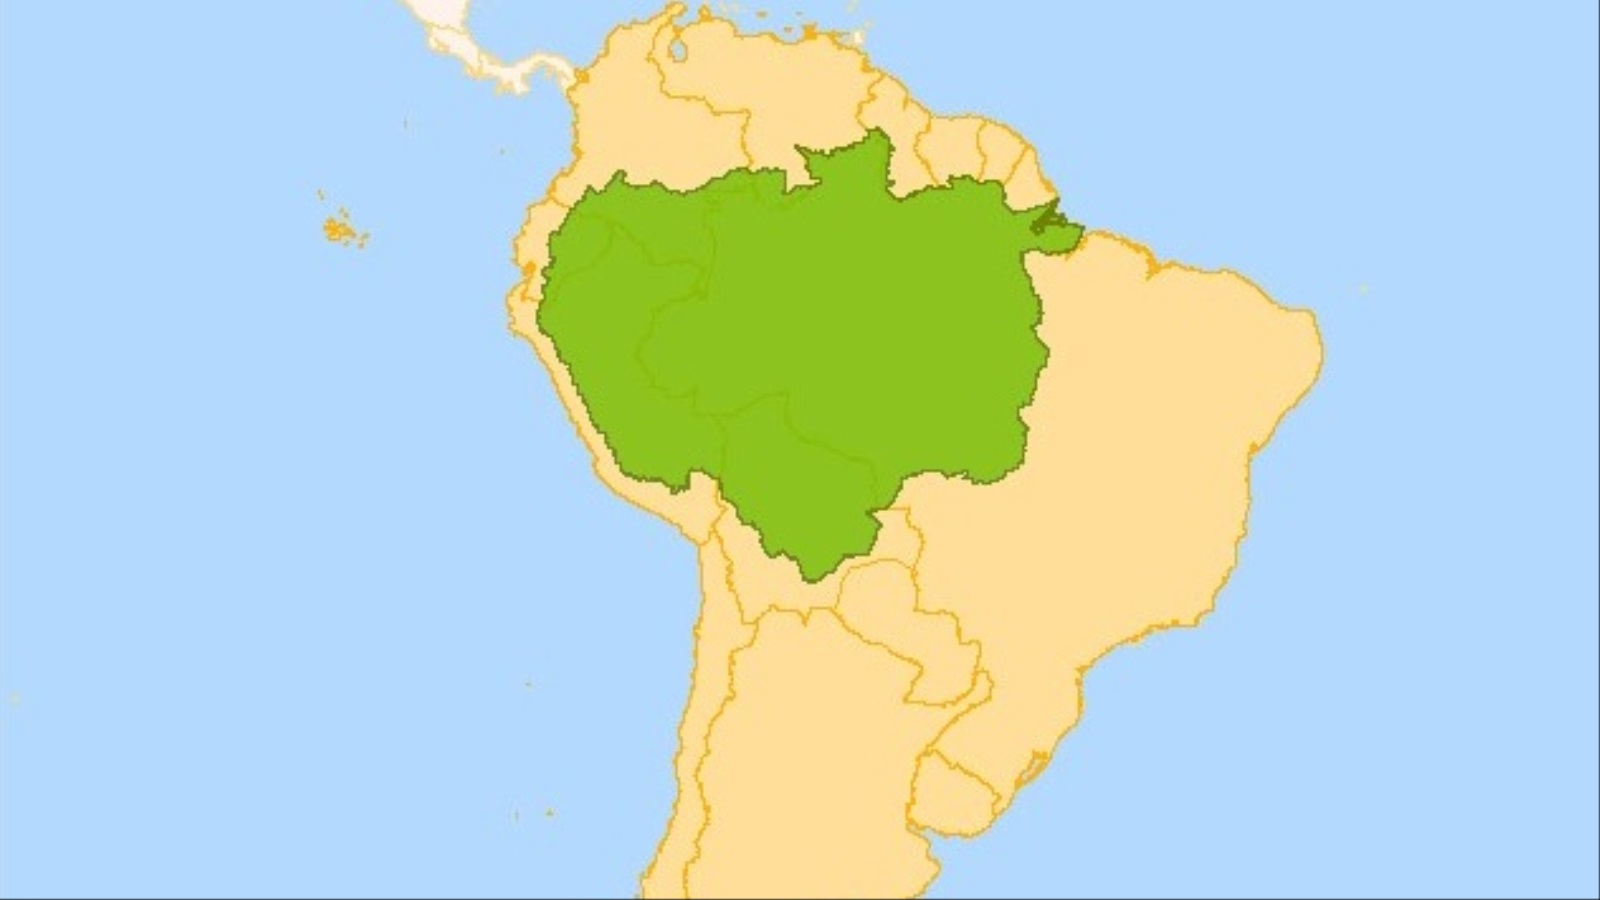 غابات الأمازون بالنسبة لقارة أميركا الجنوبية